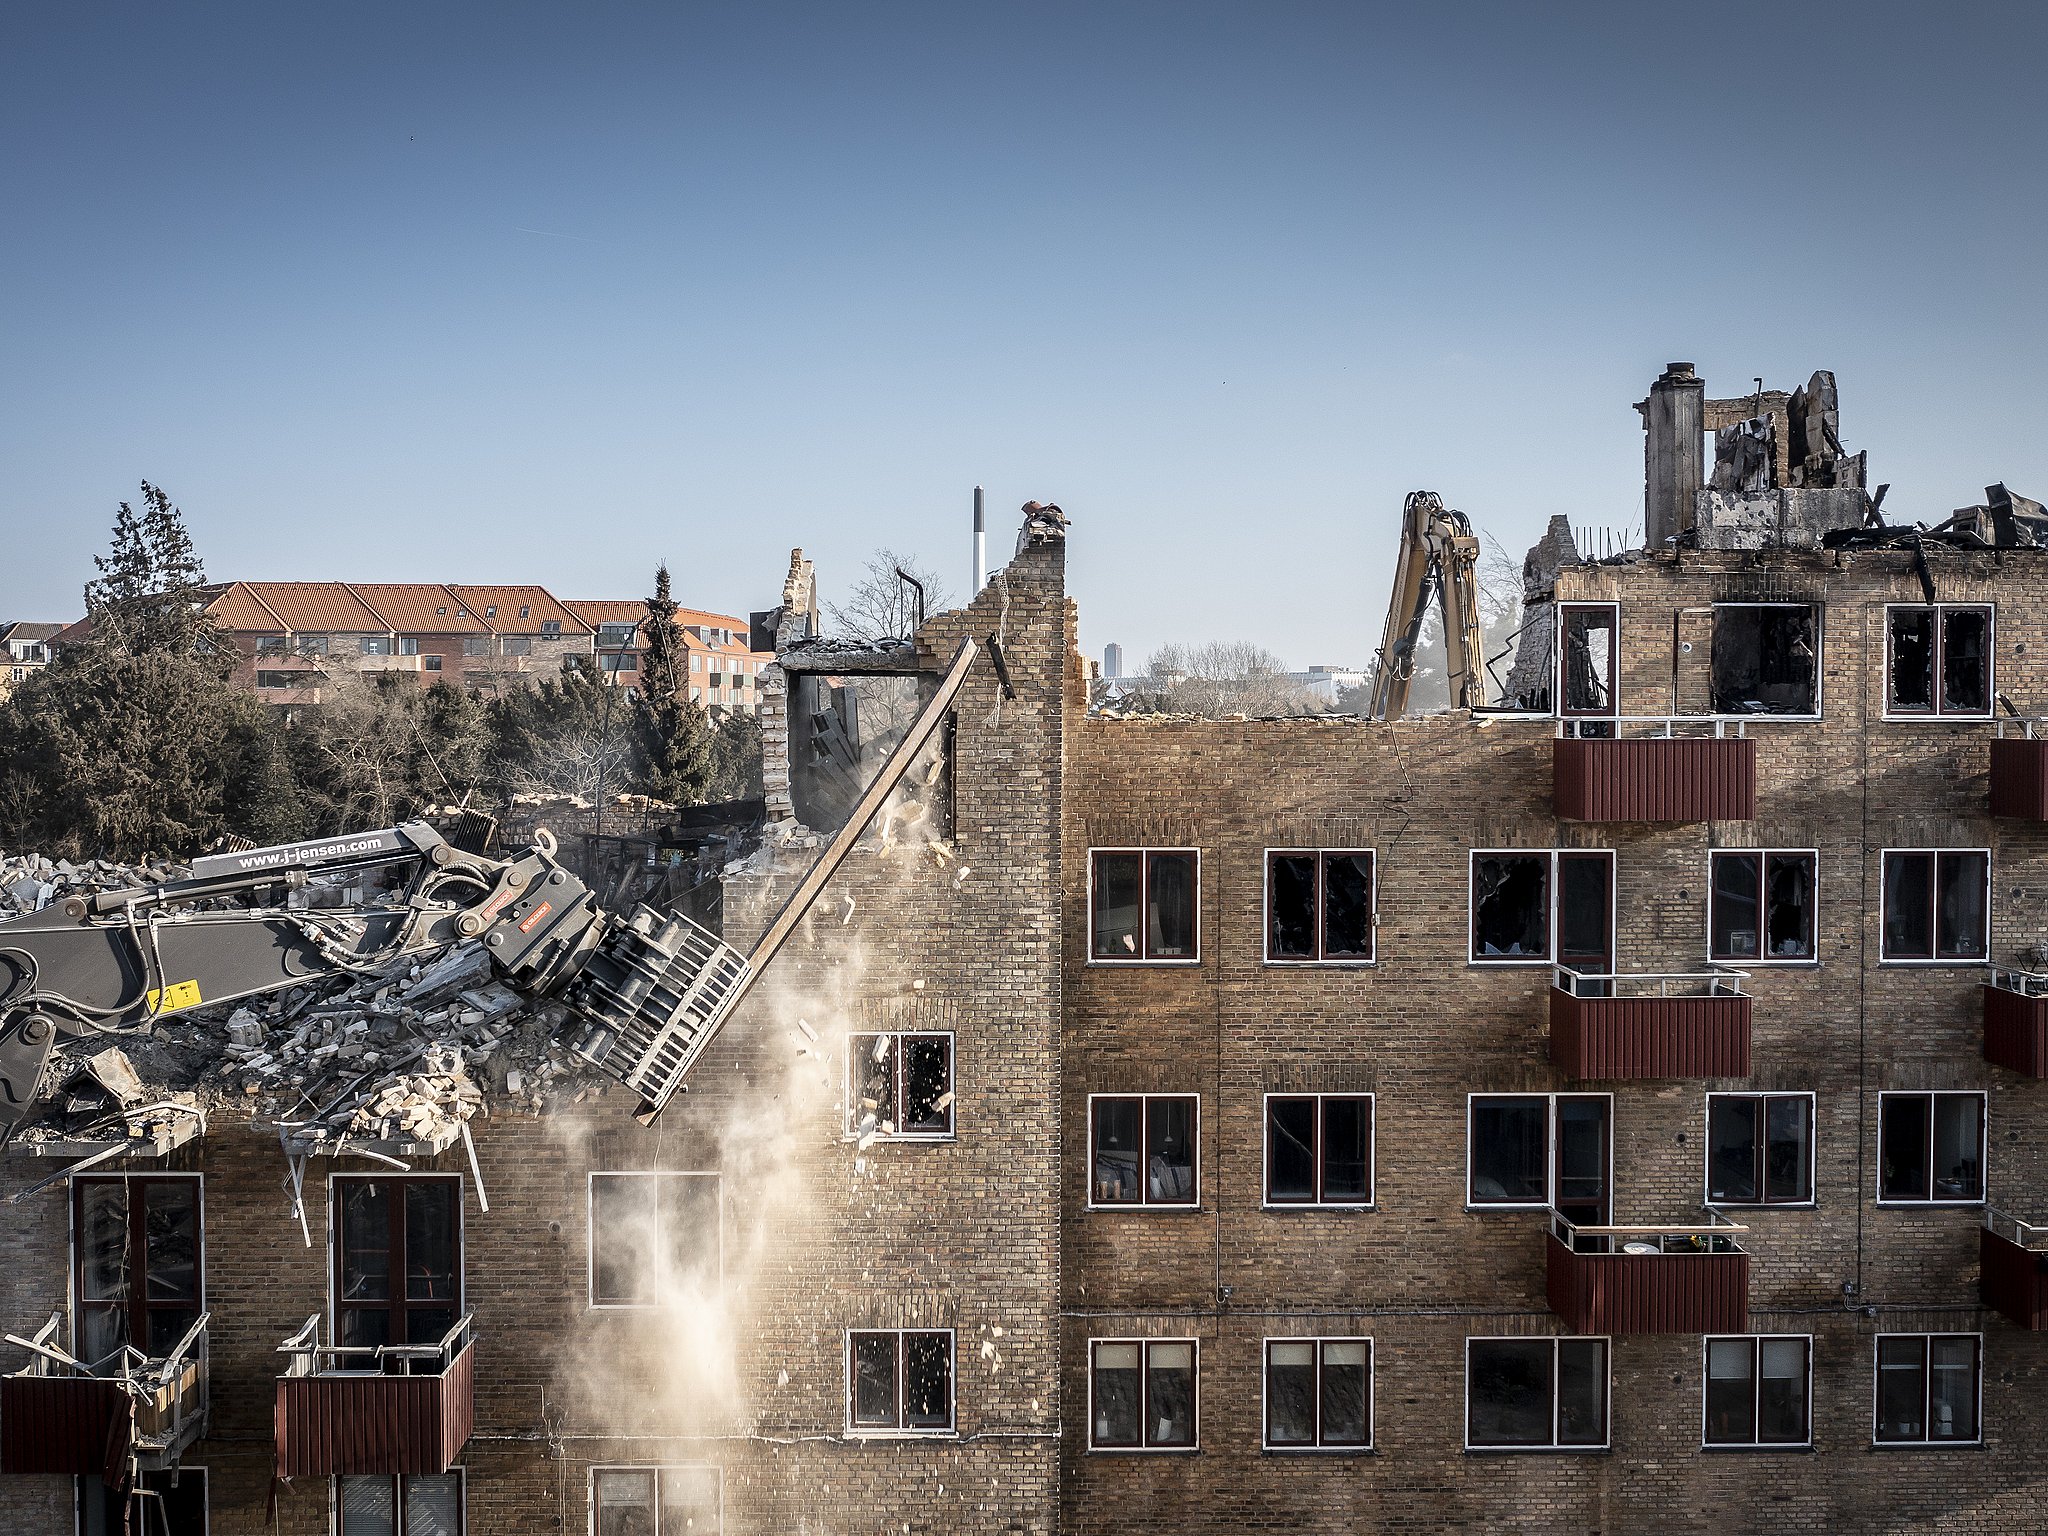 Flere undrer sig: Hvorfor river bygningen i ned, inden man brandårsagen? | TV 2 Kosmopol